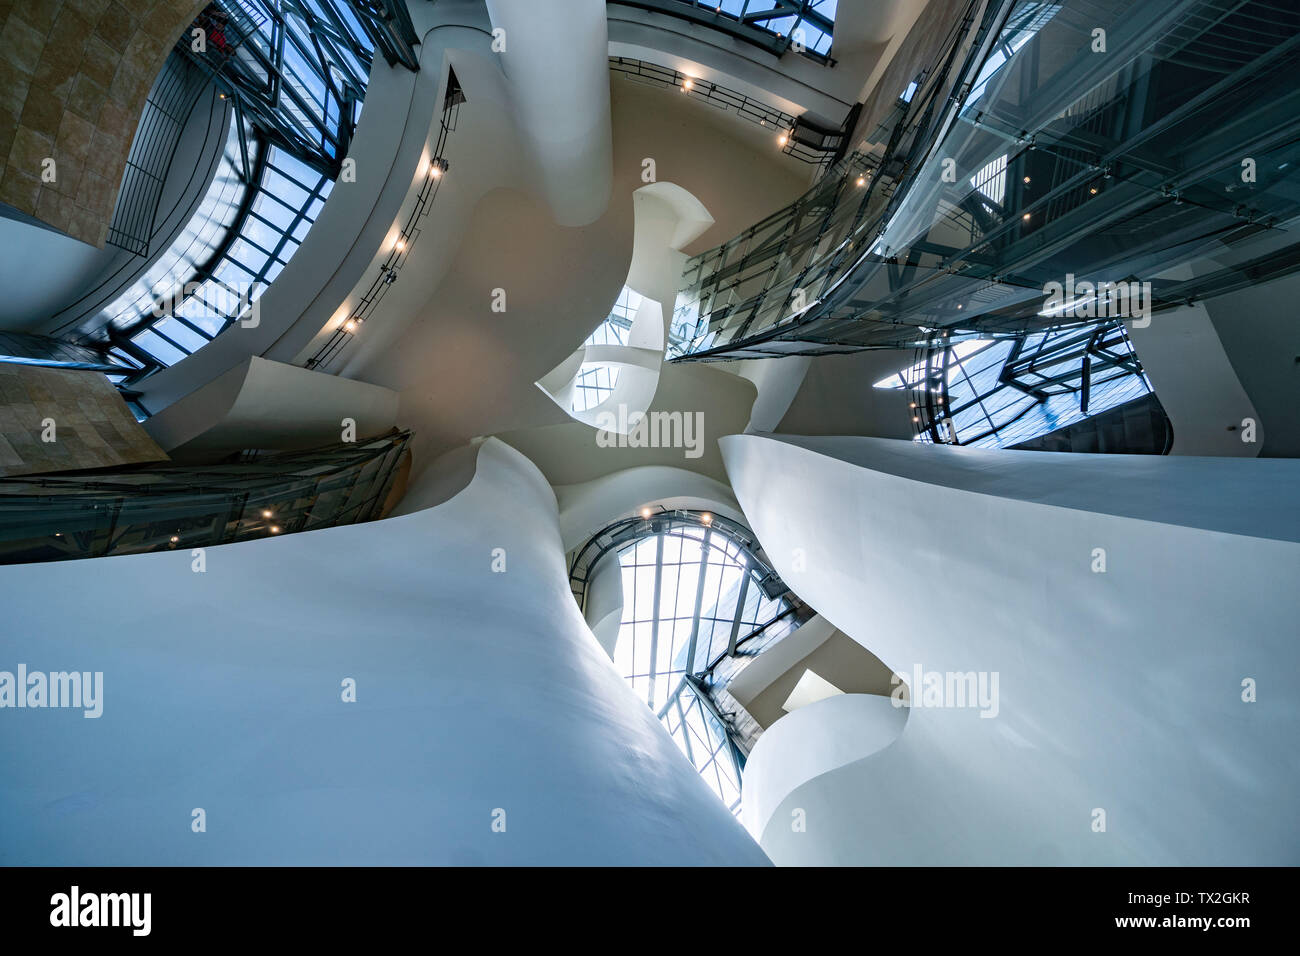 Bilbao, Spanien. 23. Juni 2019. Innenansicht des Guggenheim Museum in Bilbao. Das Gebäude ist eines der berühmtesten Werke des Architekten Frank Gehry. Das Museum, das zu der Zeit rund 140 Millionen Euro kosten, wurde 1997 eröffnet. Foto: Frank Rumpenhorst/dpa/Alamy leben Nachrichten Stockfoto